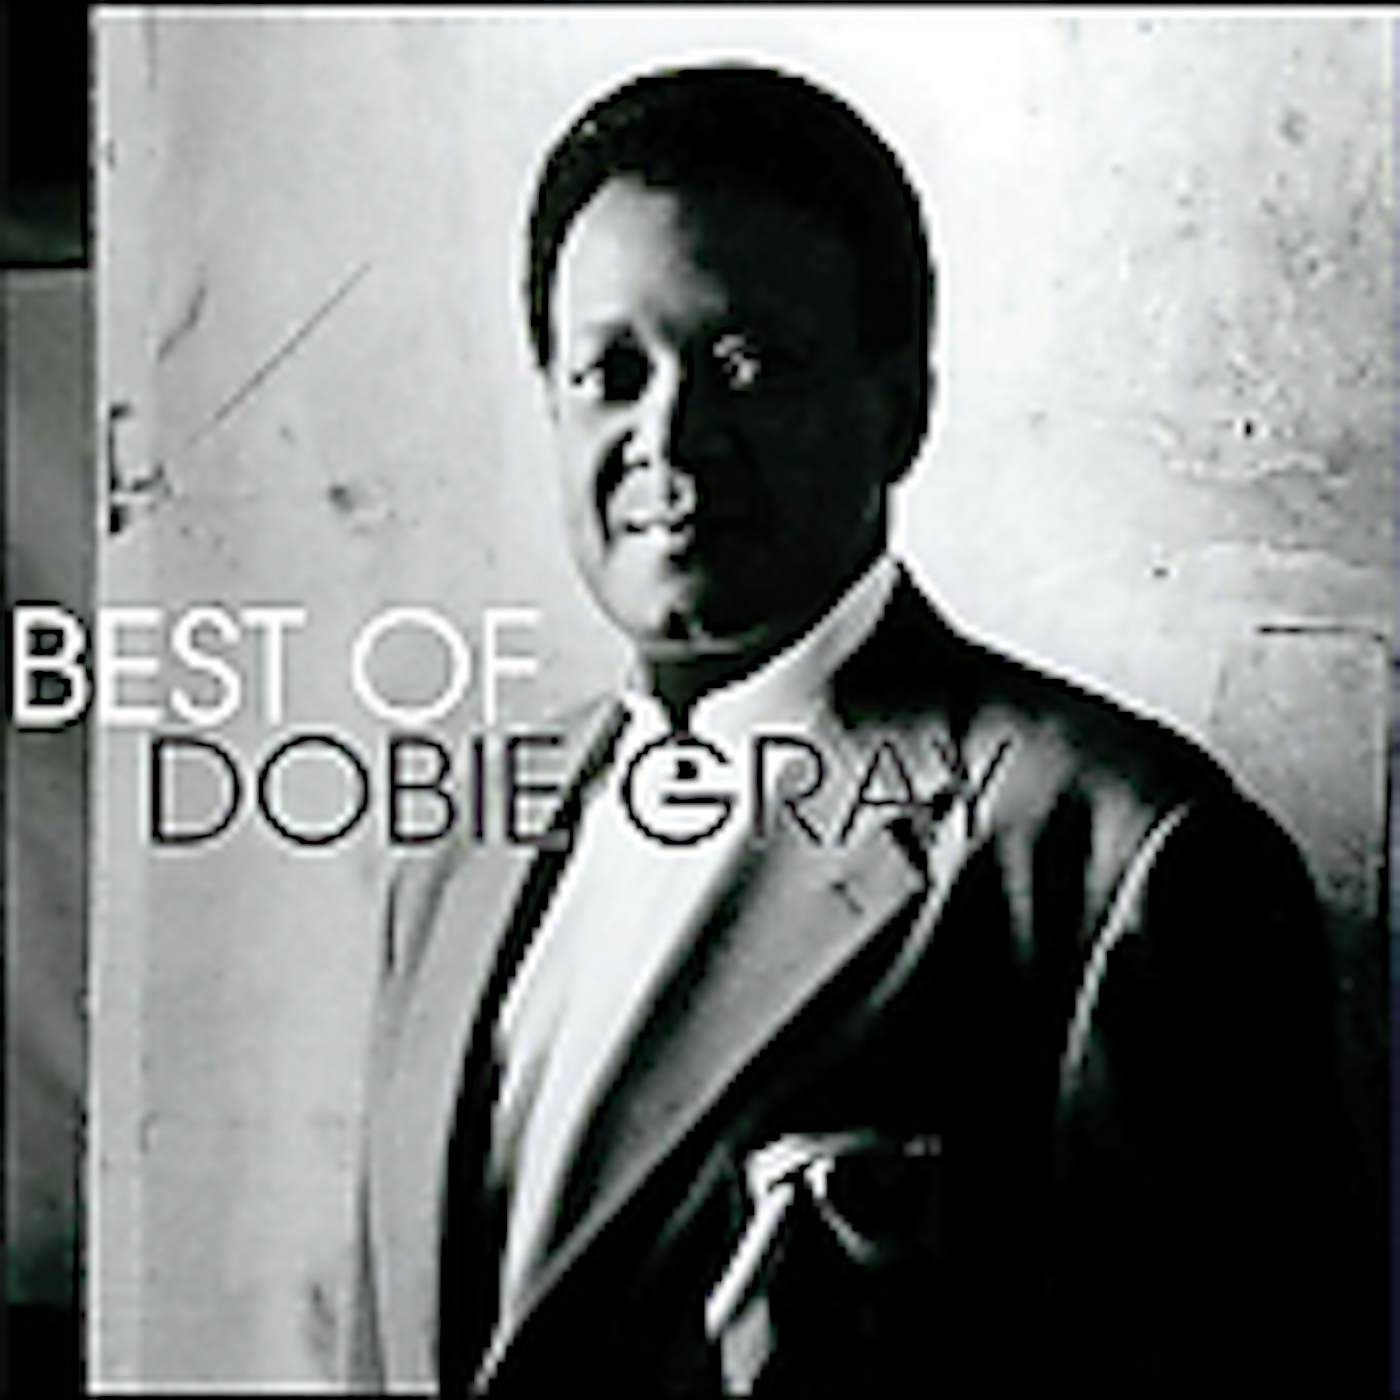 Dobie Gray BEST OF CD